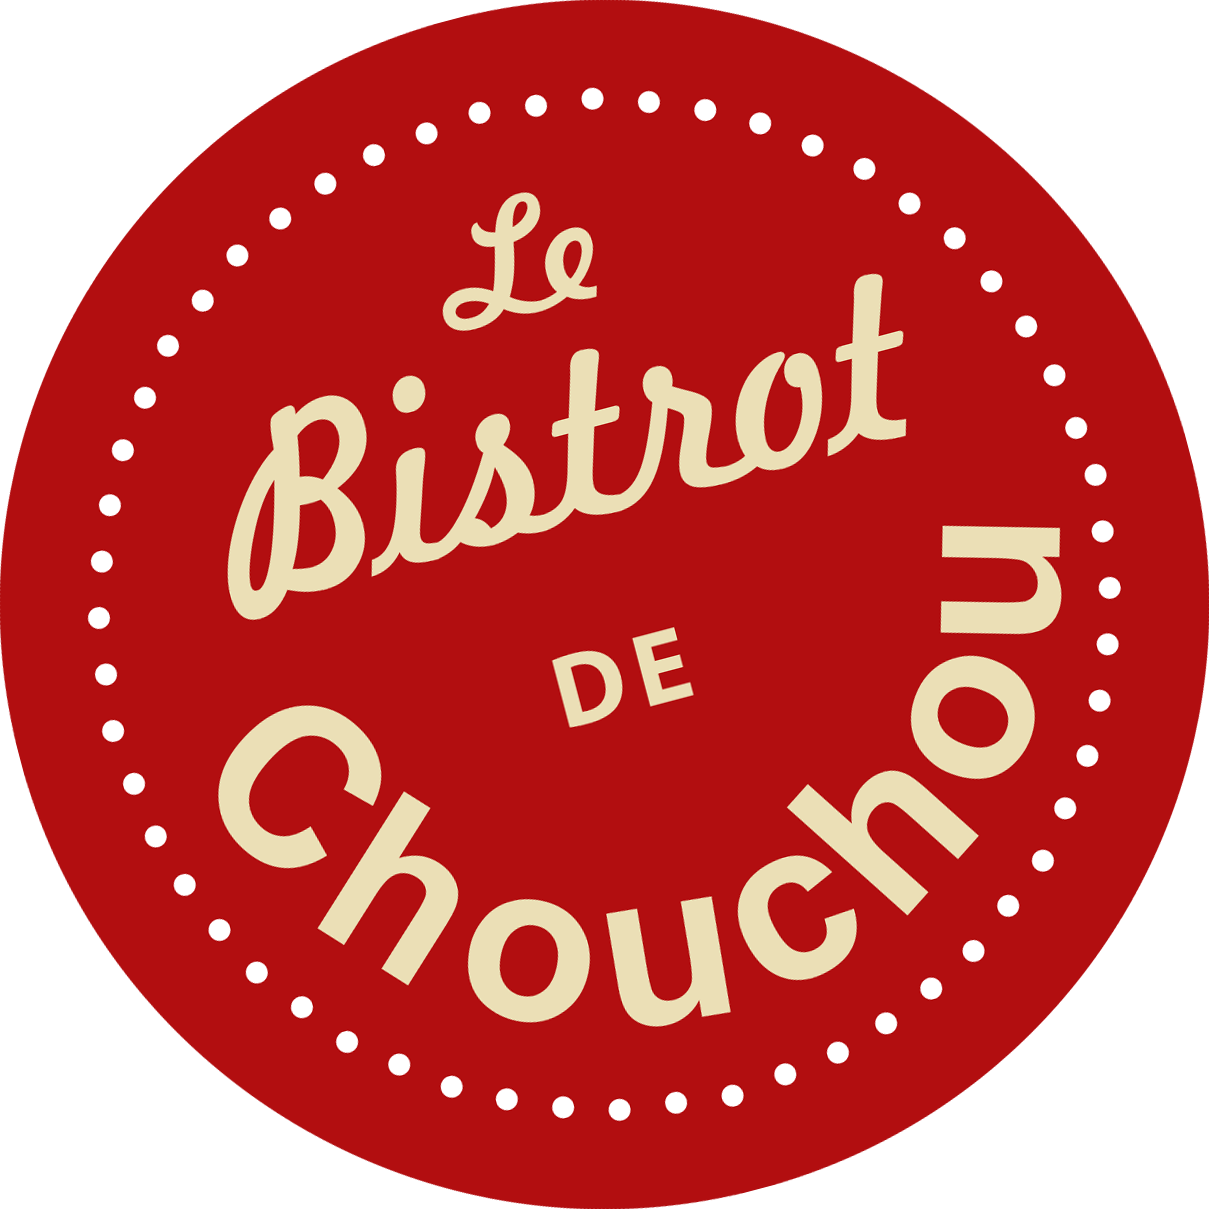 Le Bistrot de Chouchou